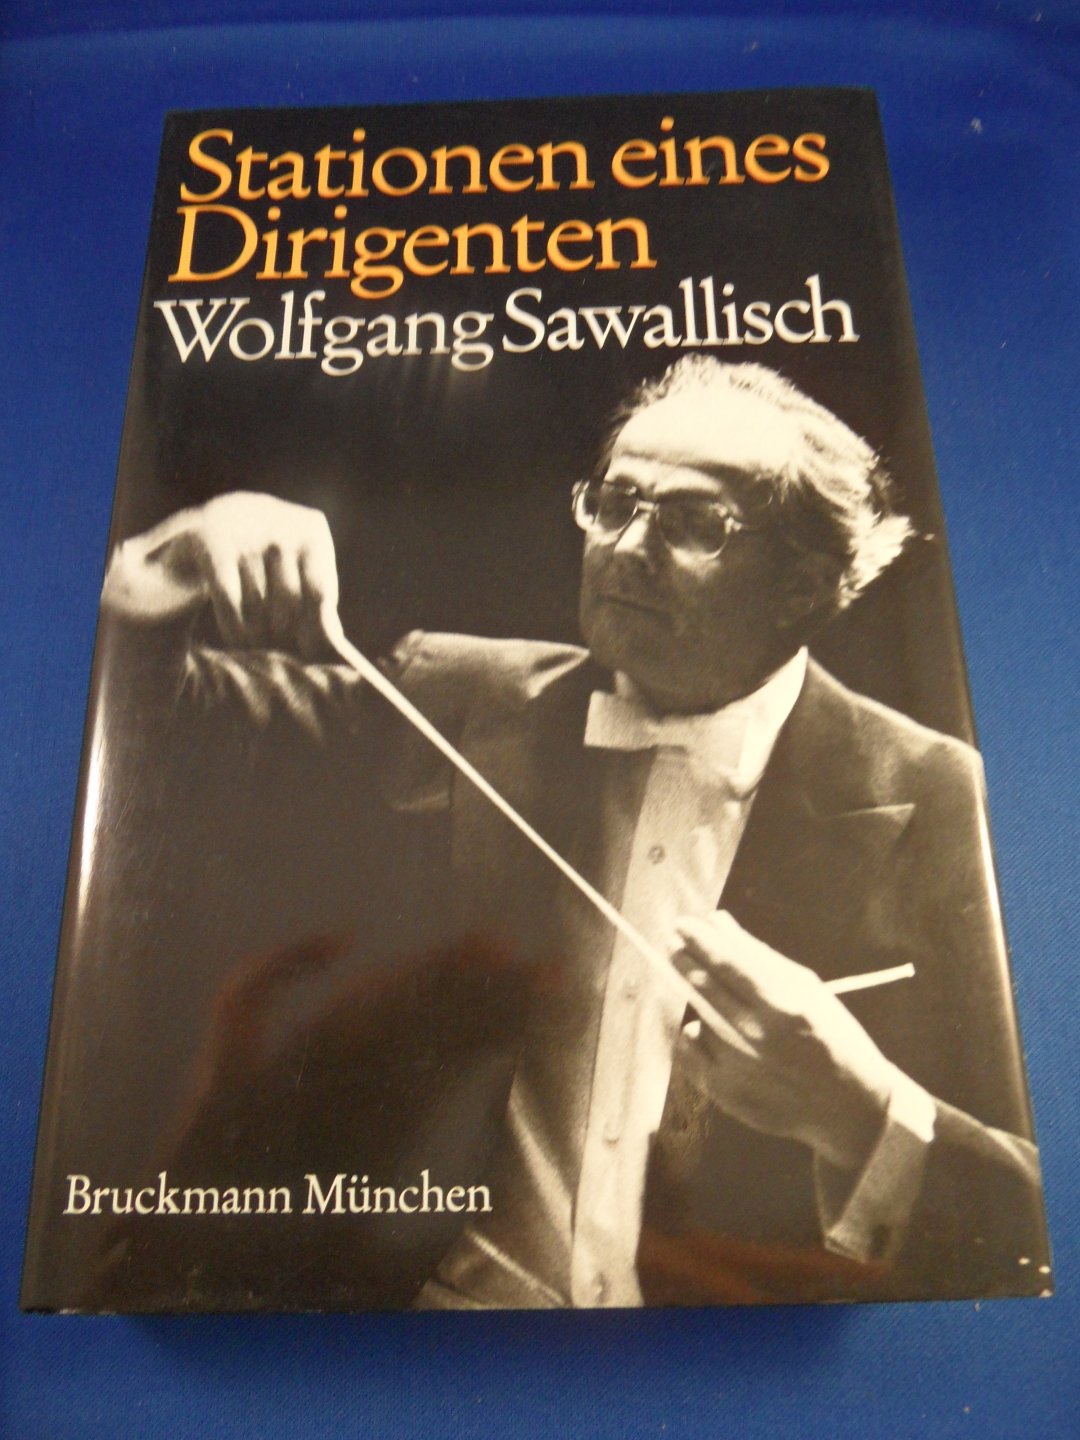 Sawallisch, Wolfgang - Stationen eines Dirigenten